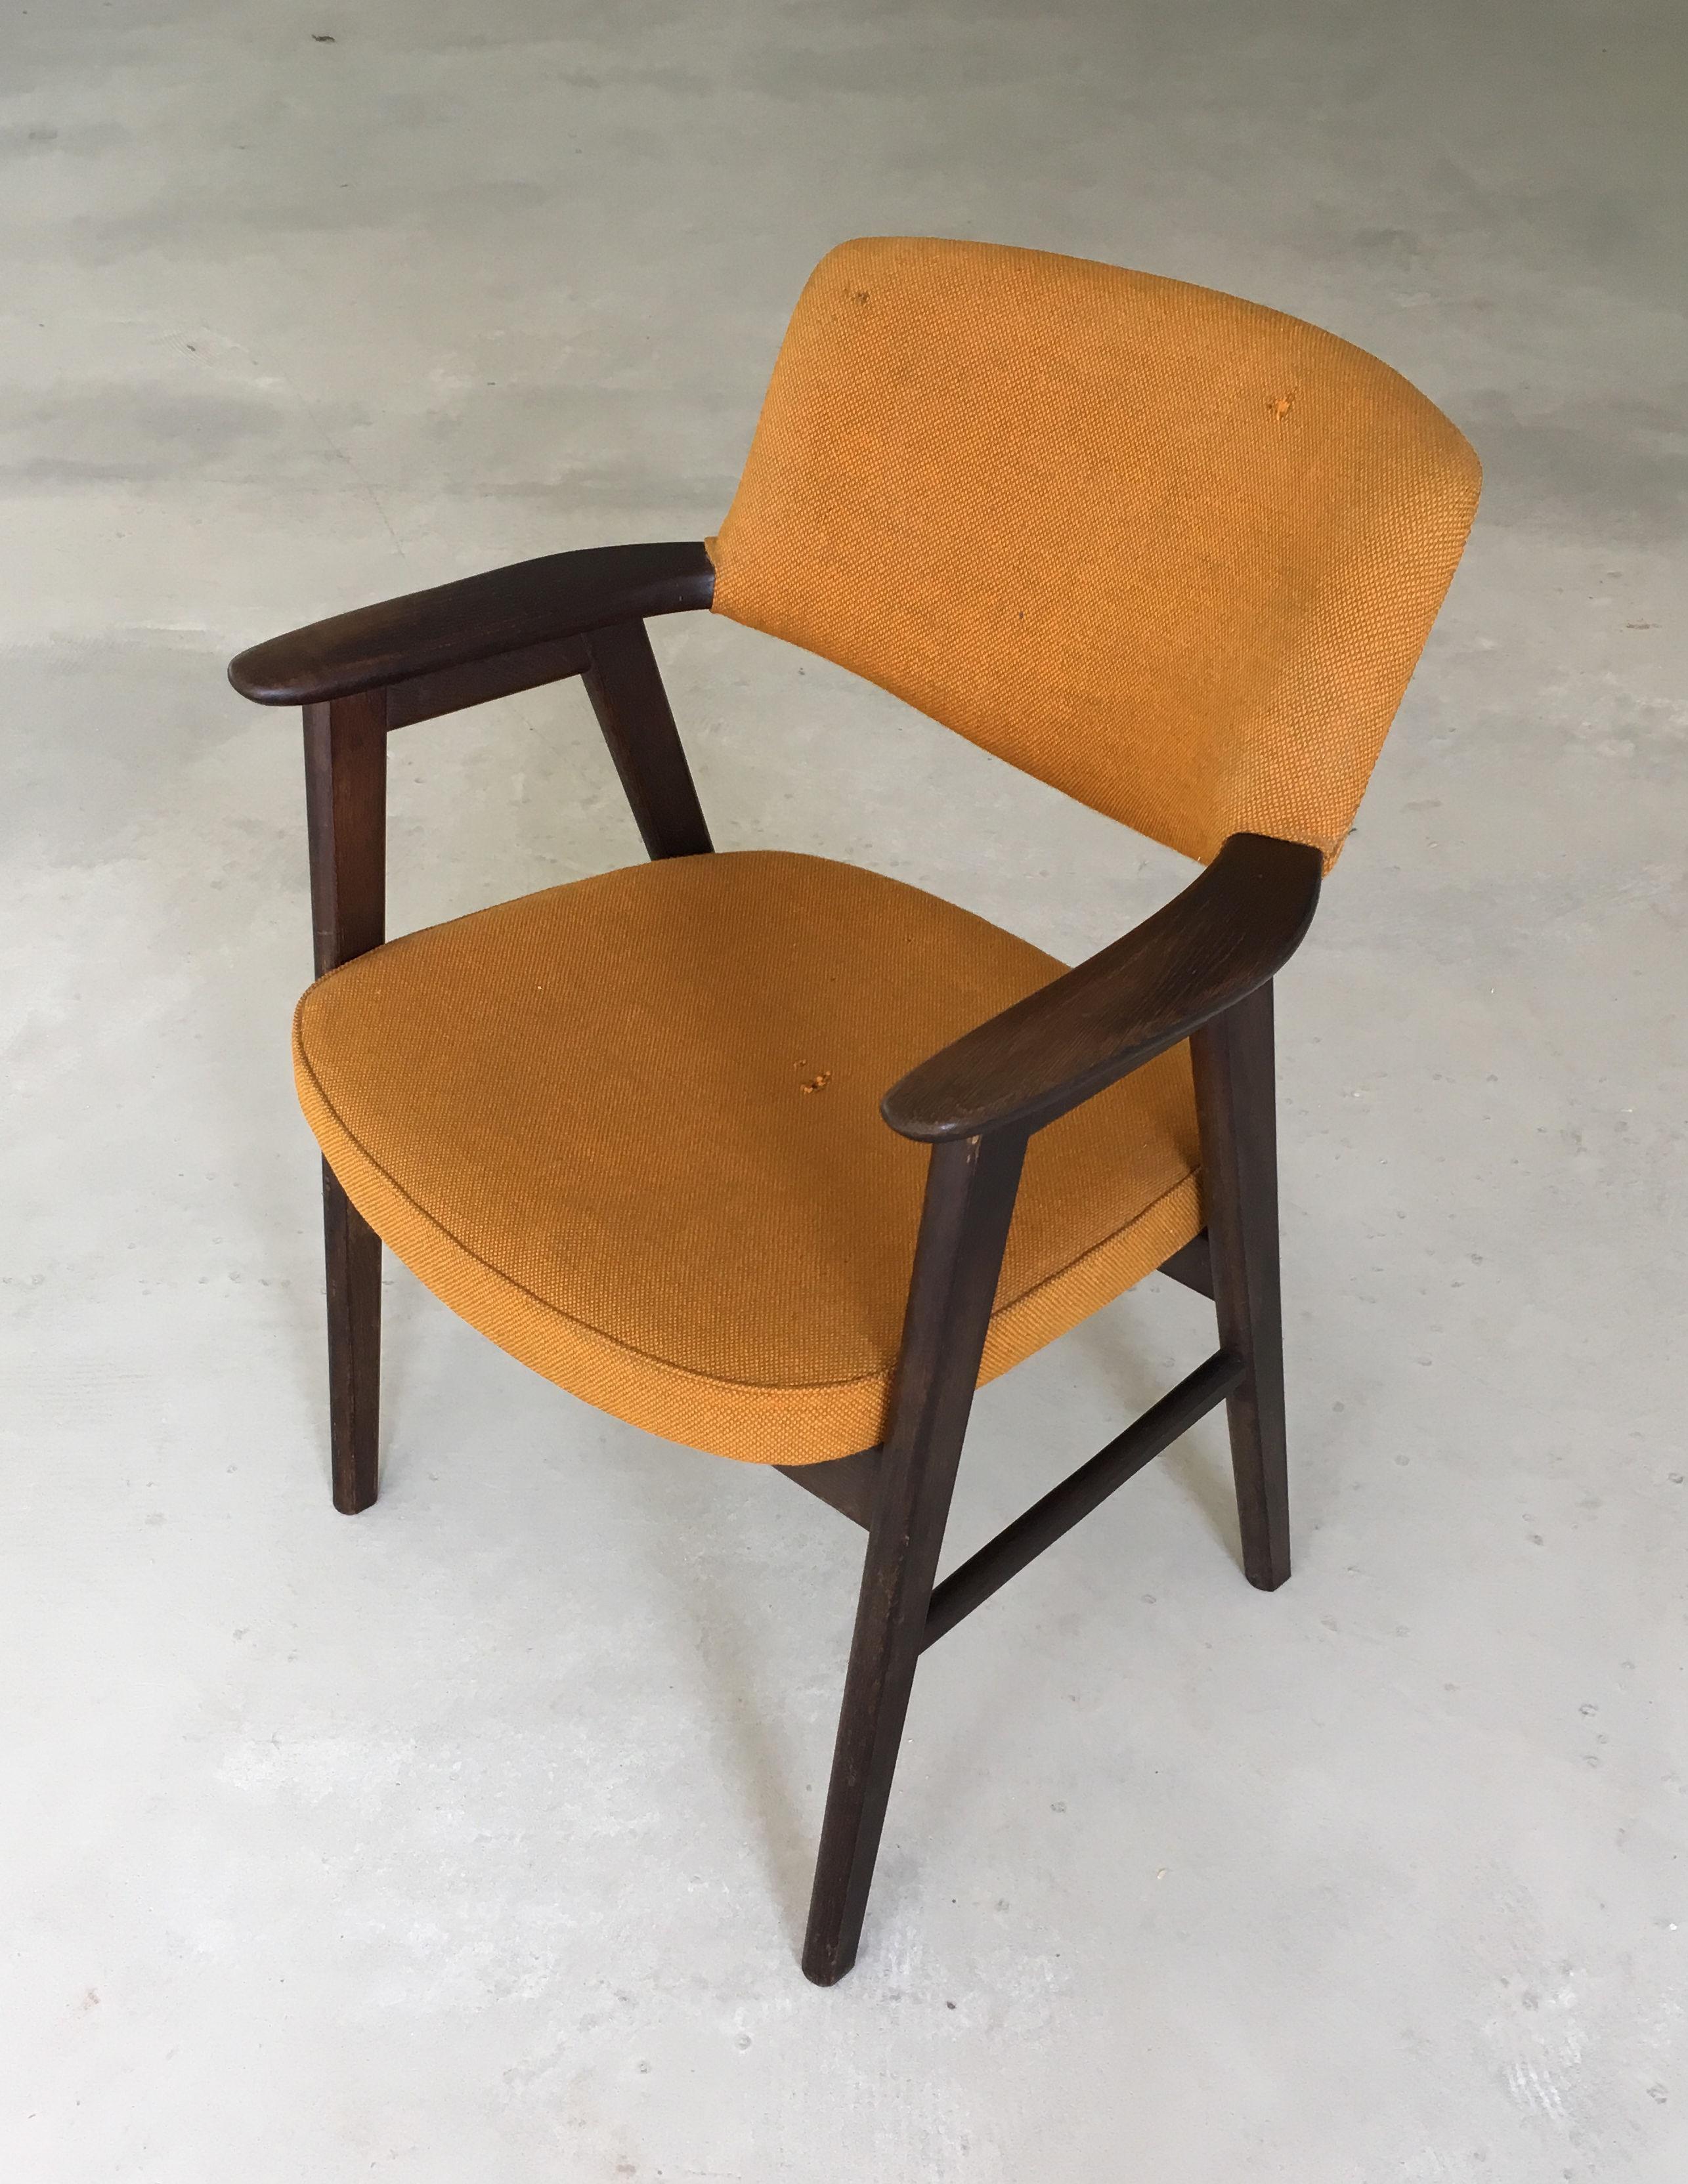 Erik Kirkegaard dänischer Schreibtischstuhl aus gegerbter Eiche, entworfen für Høng Stolefabrik im Jahr 1956. 

Der bequeme Stuhl hat ein schlichtes, minimalistisches Design und eignet sich auch gut als Schreibtischstuhl.

Die Gestelle der Stühle